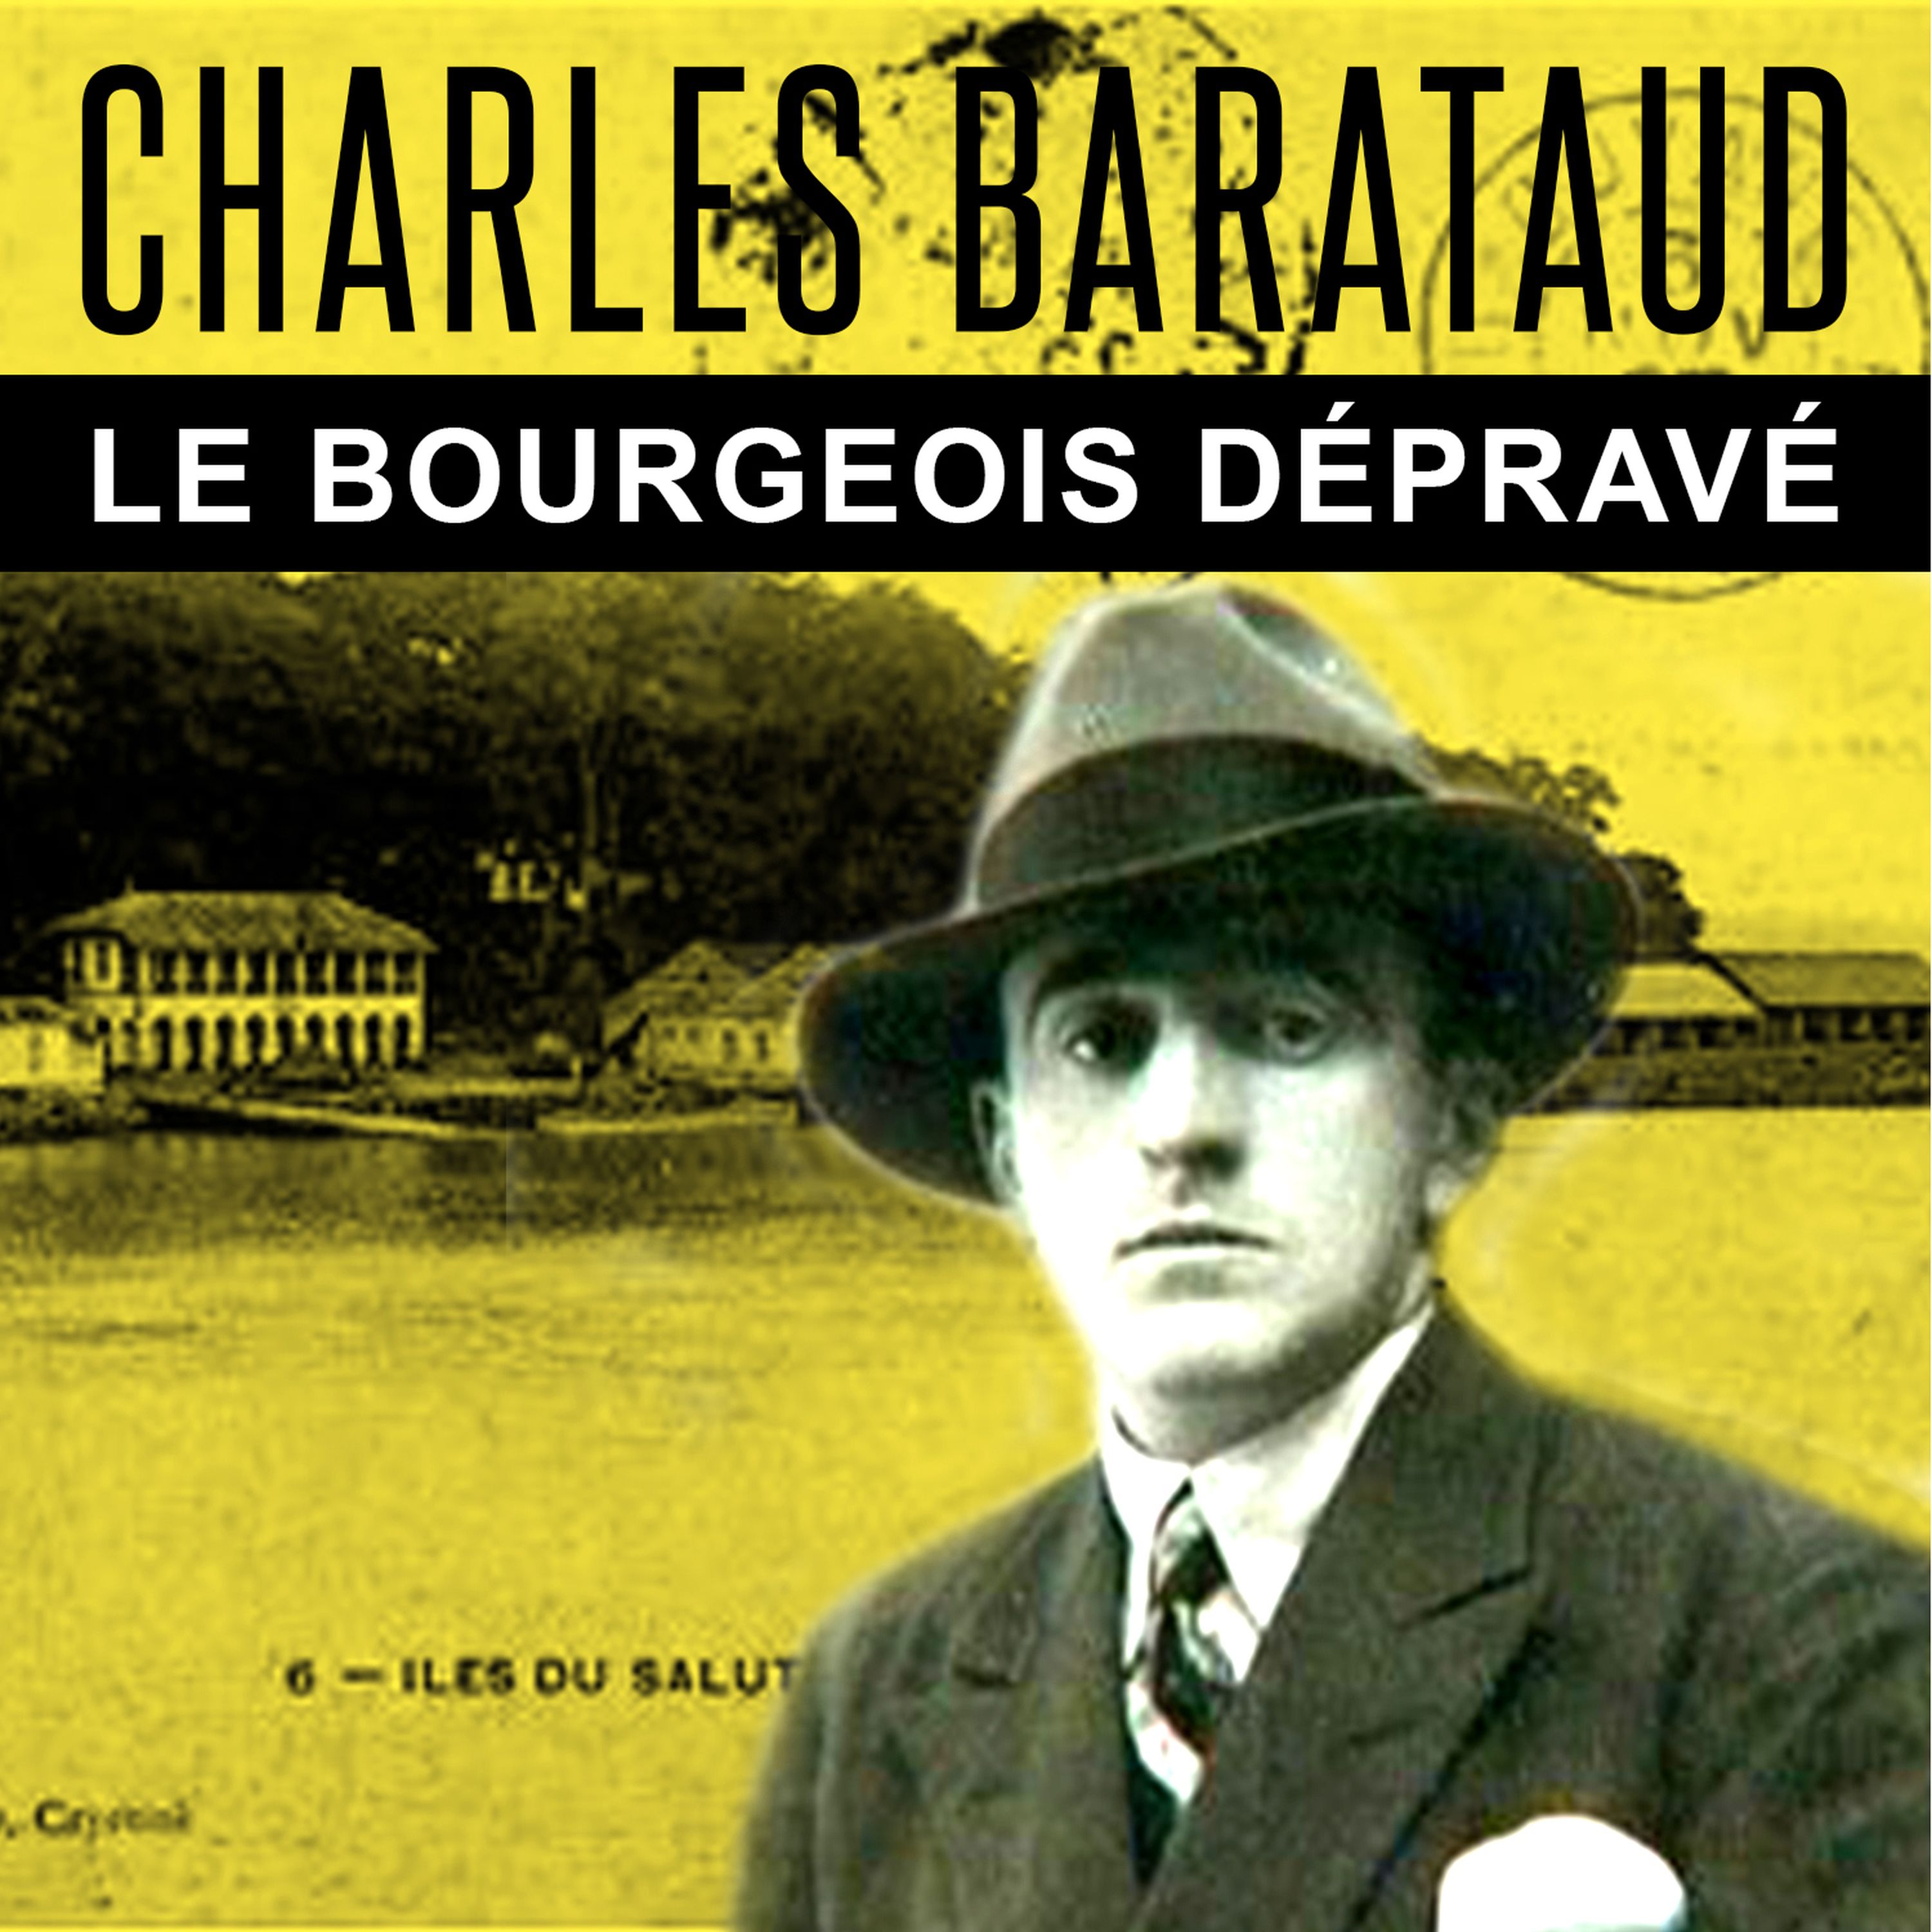 083-Charles Barataud, le bourgeois dépravé